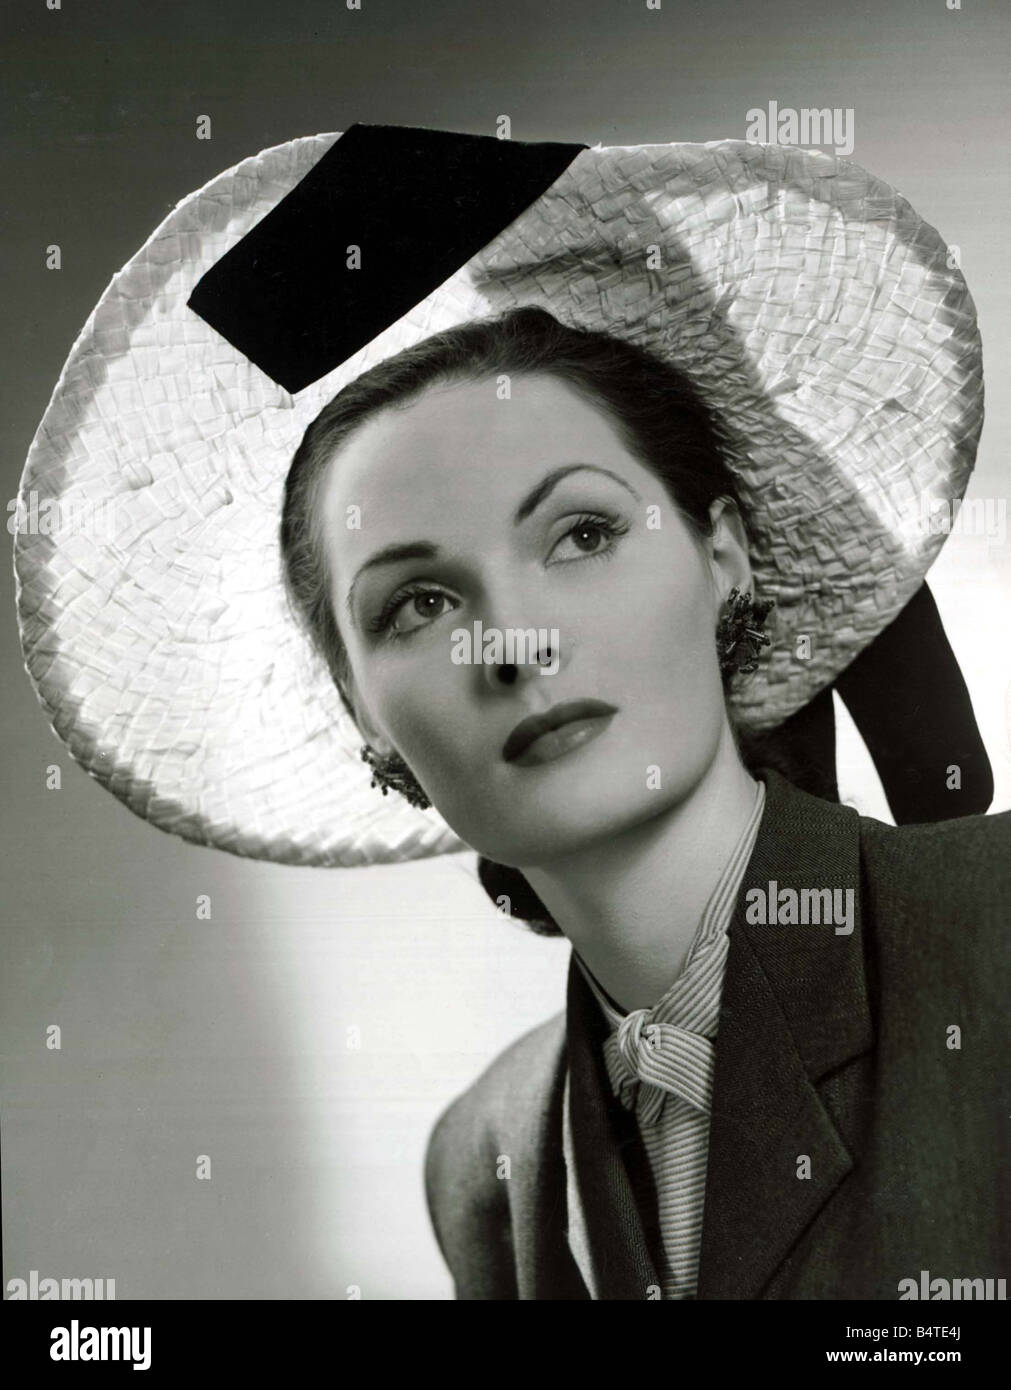 Vers 1940 La mode paille tressée naturel photo hat conçu par Hugh Beresford avec ruban de velours noir enfilées par le bord et de tomber sur l'épaule de grandes boucles d'une Cravate et veste blazer sur un modèle 1940 vêtements mode shoot mirrorpix Banque D'Images